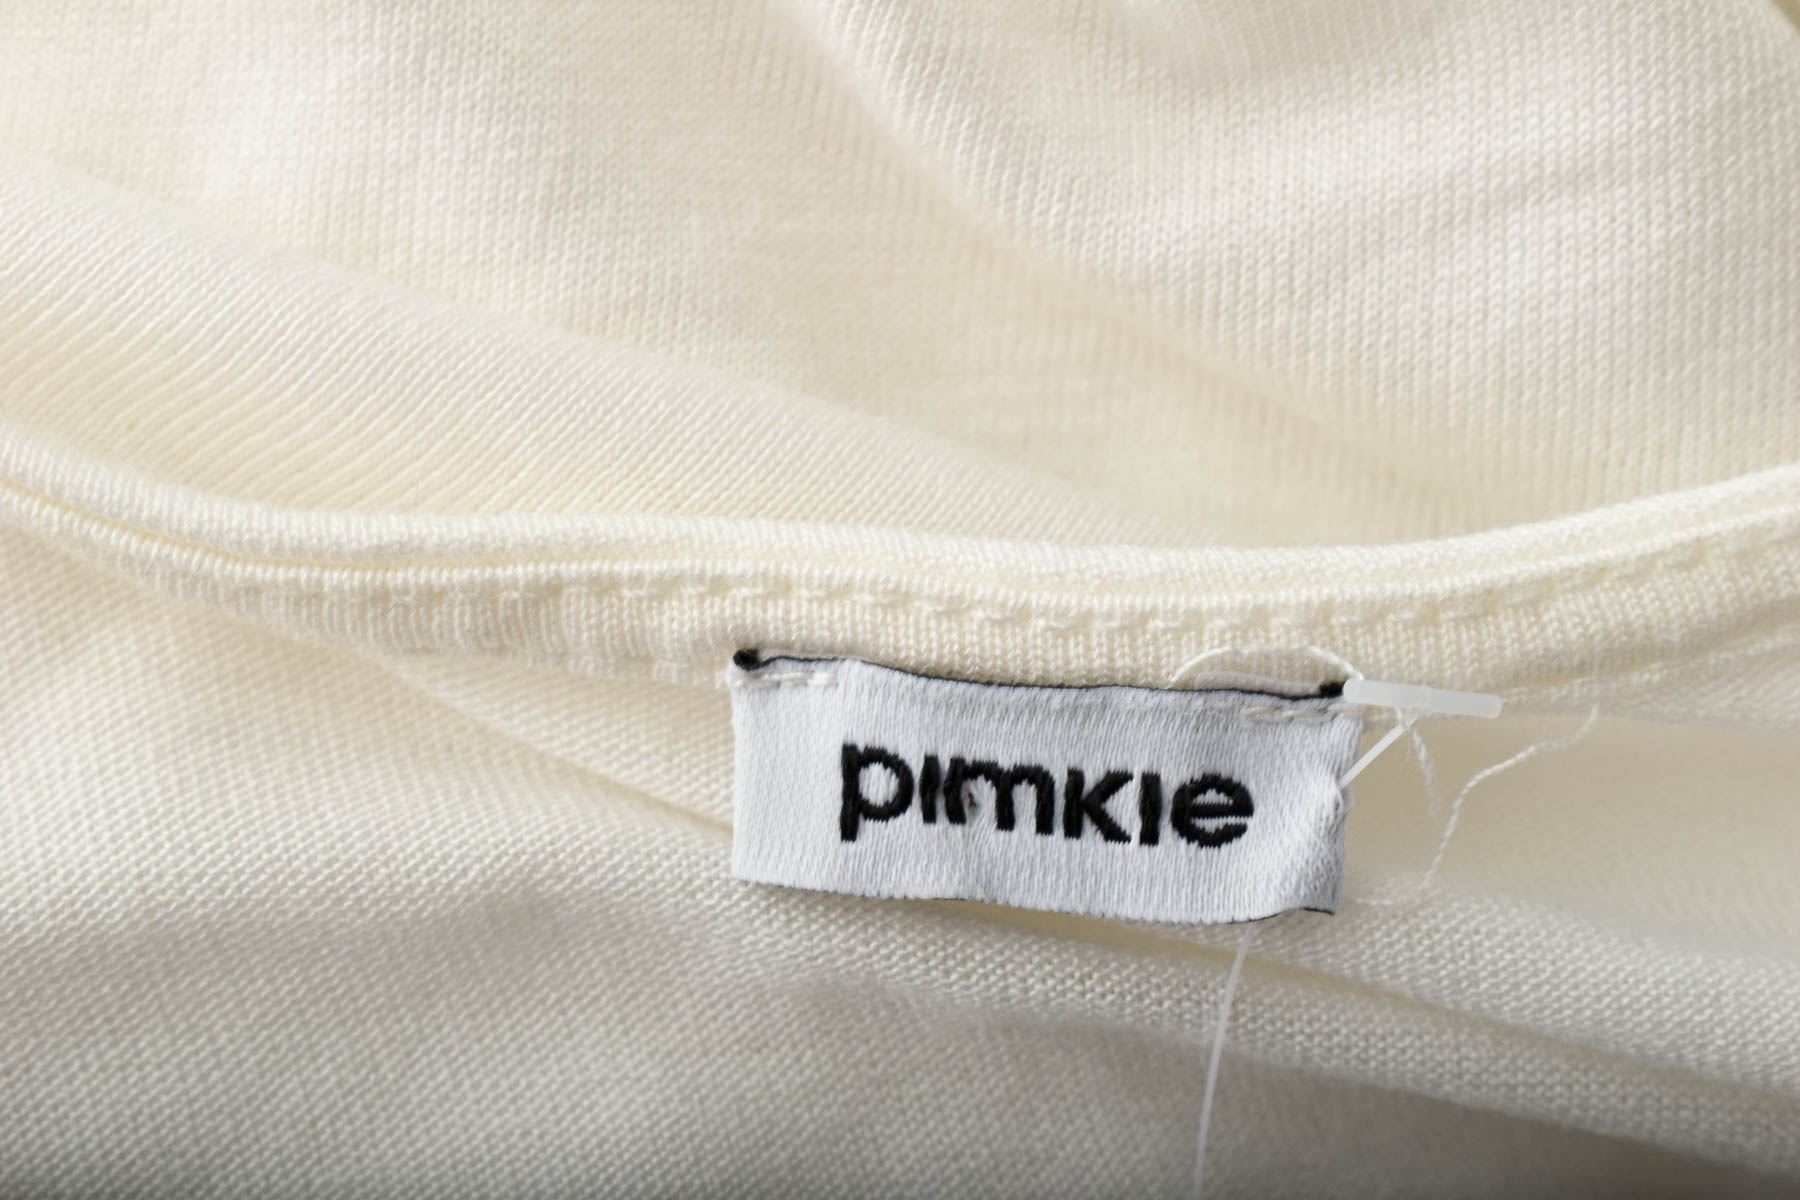 Bluza de damă - Pimkie - 2